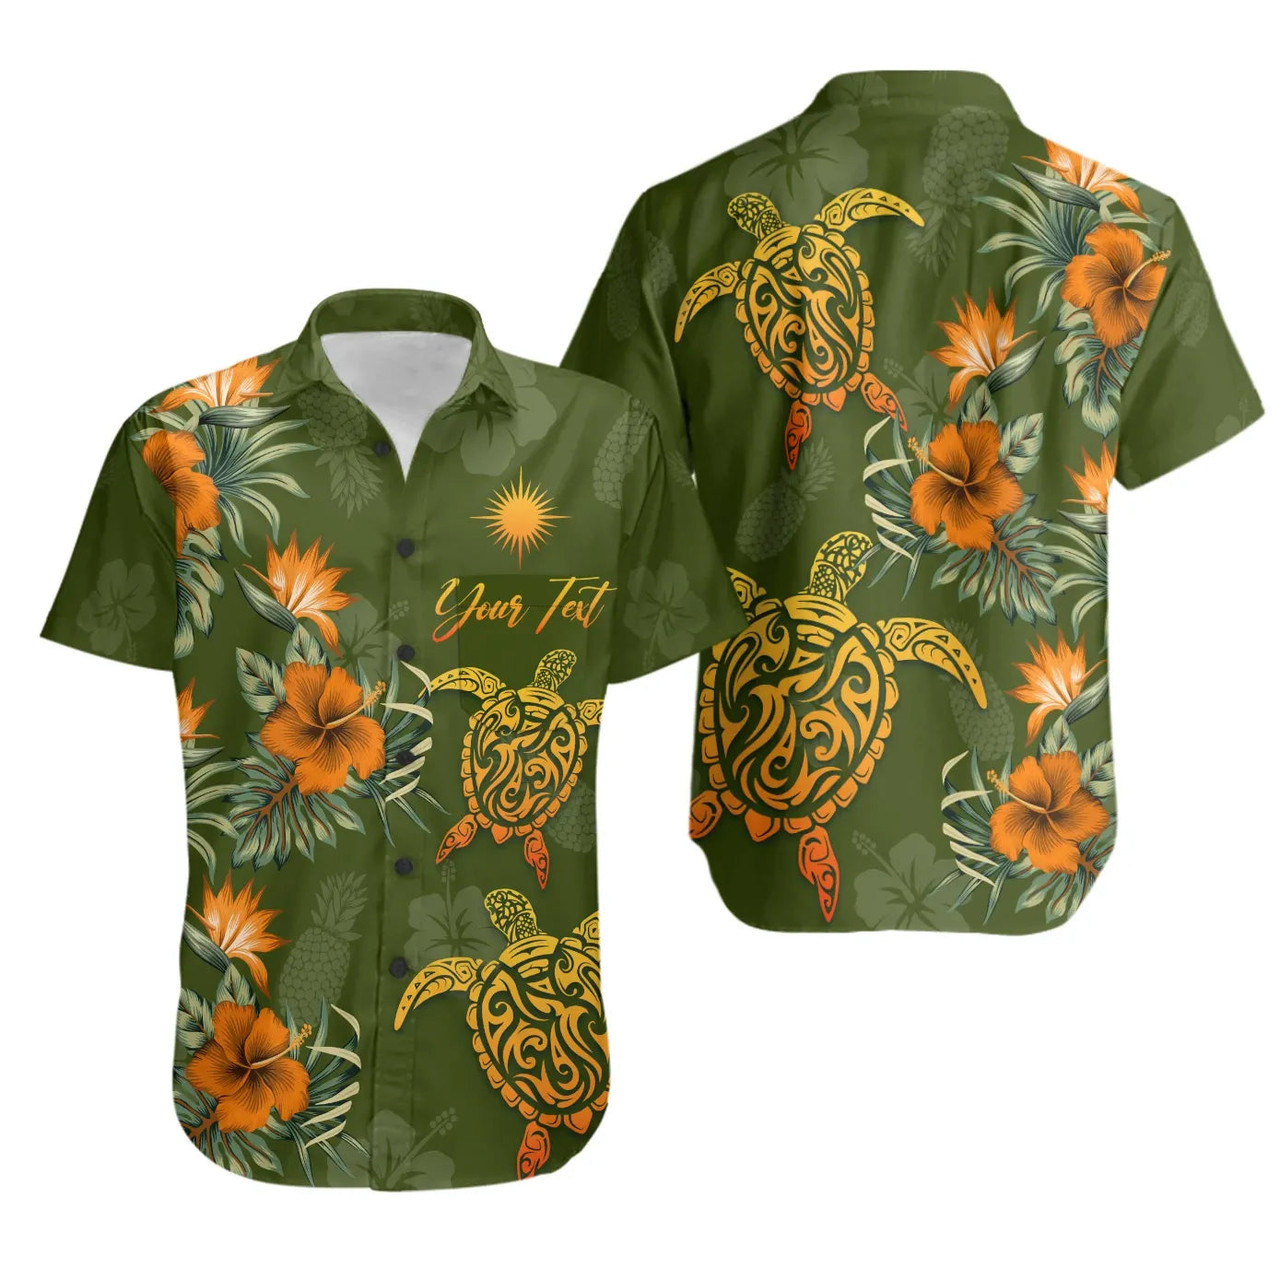 Marshall Islands Polynesian Custom Personalised Hawaiian Shirts - Tropical Summer 1